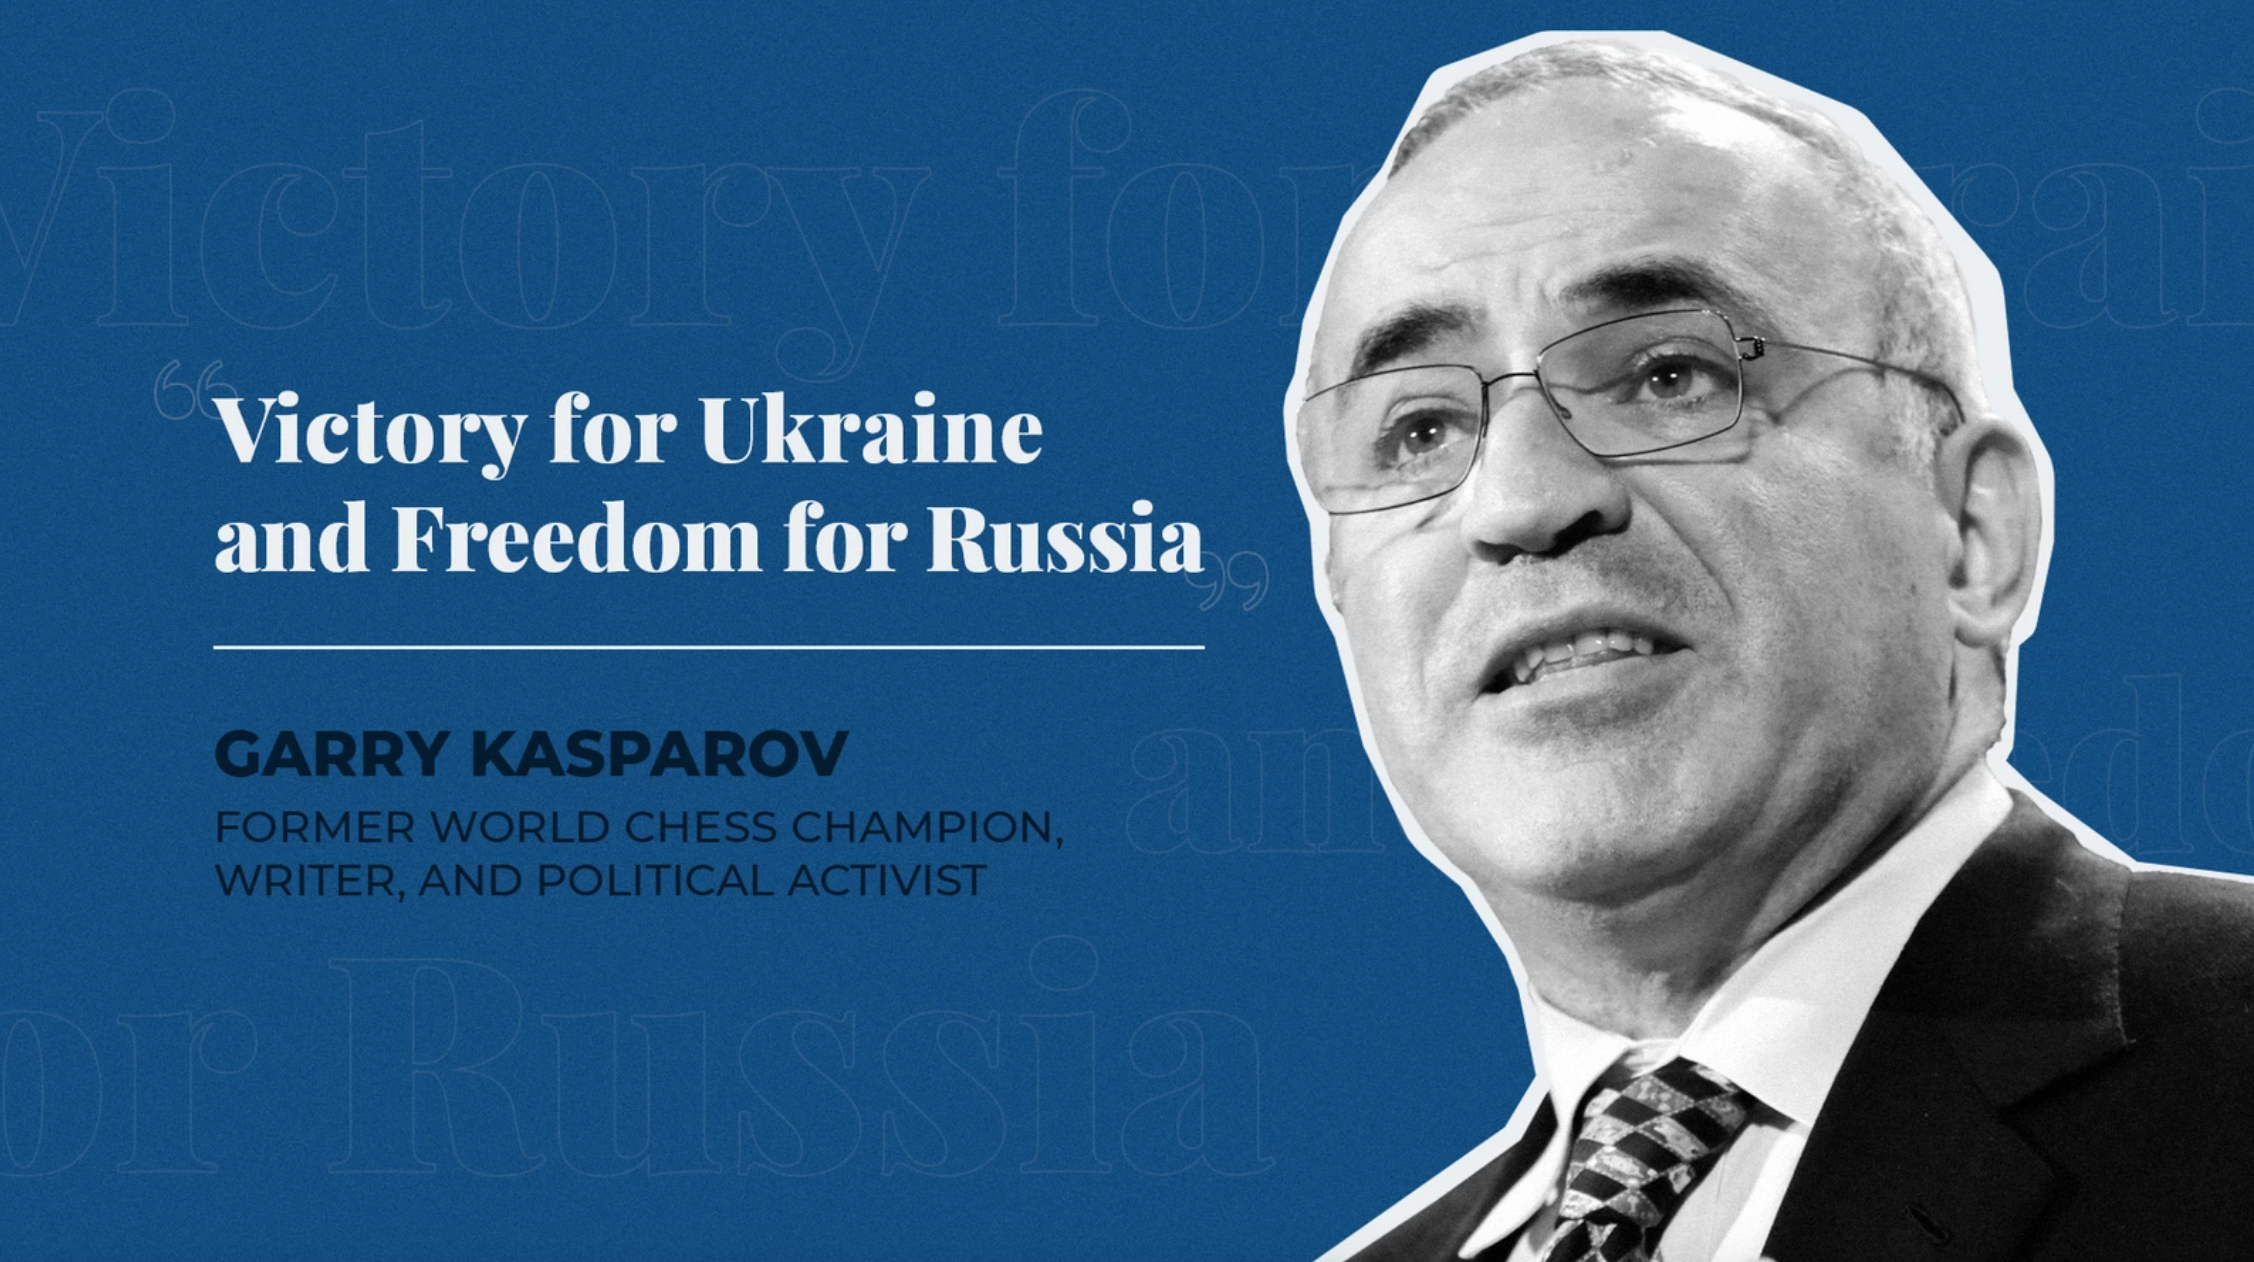 What is garry kasparov